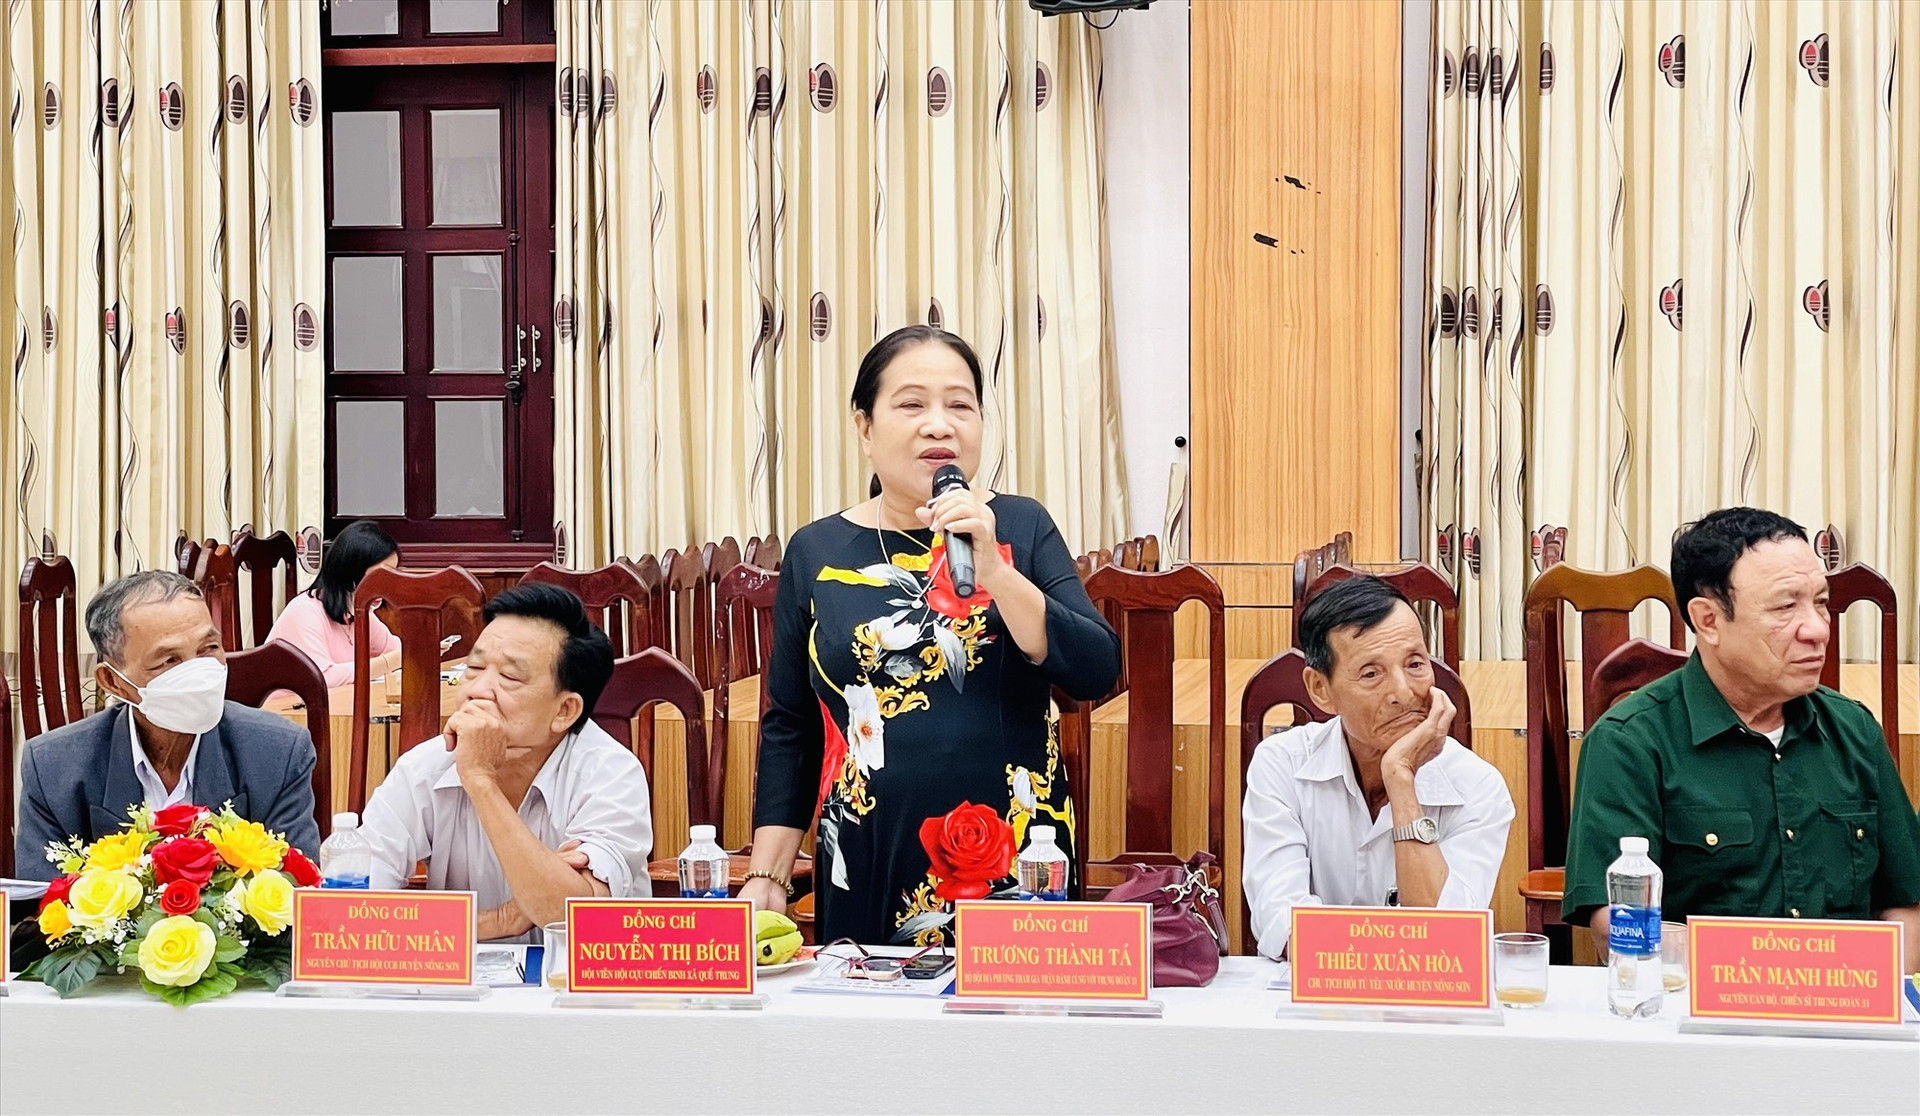 Hội viên cựu chiến binh Nguyễn Thị Bích - người đã có đóng góp lớn trong việc vận động kinh phí xây dựng Khu nhà bia tưởng niệm các anh hùng liệt sĩ Hóc Thượng. Ảnh: TÂM LÊ